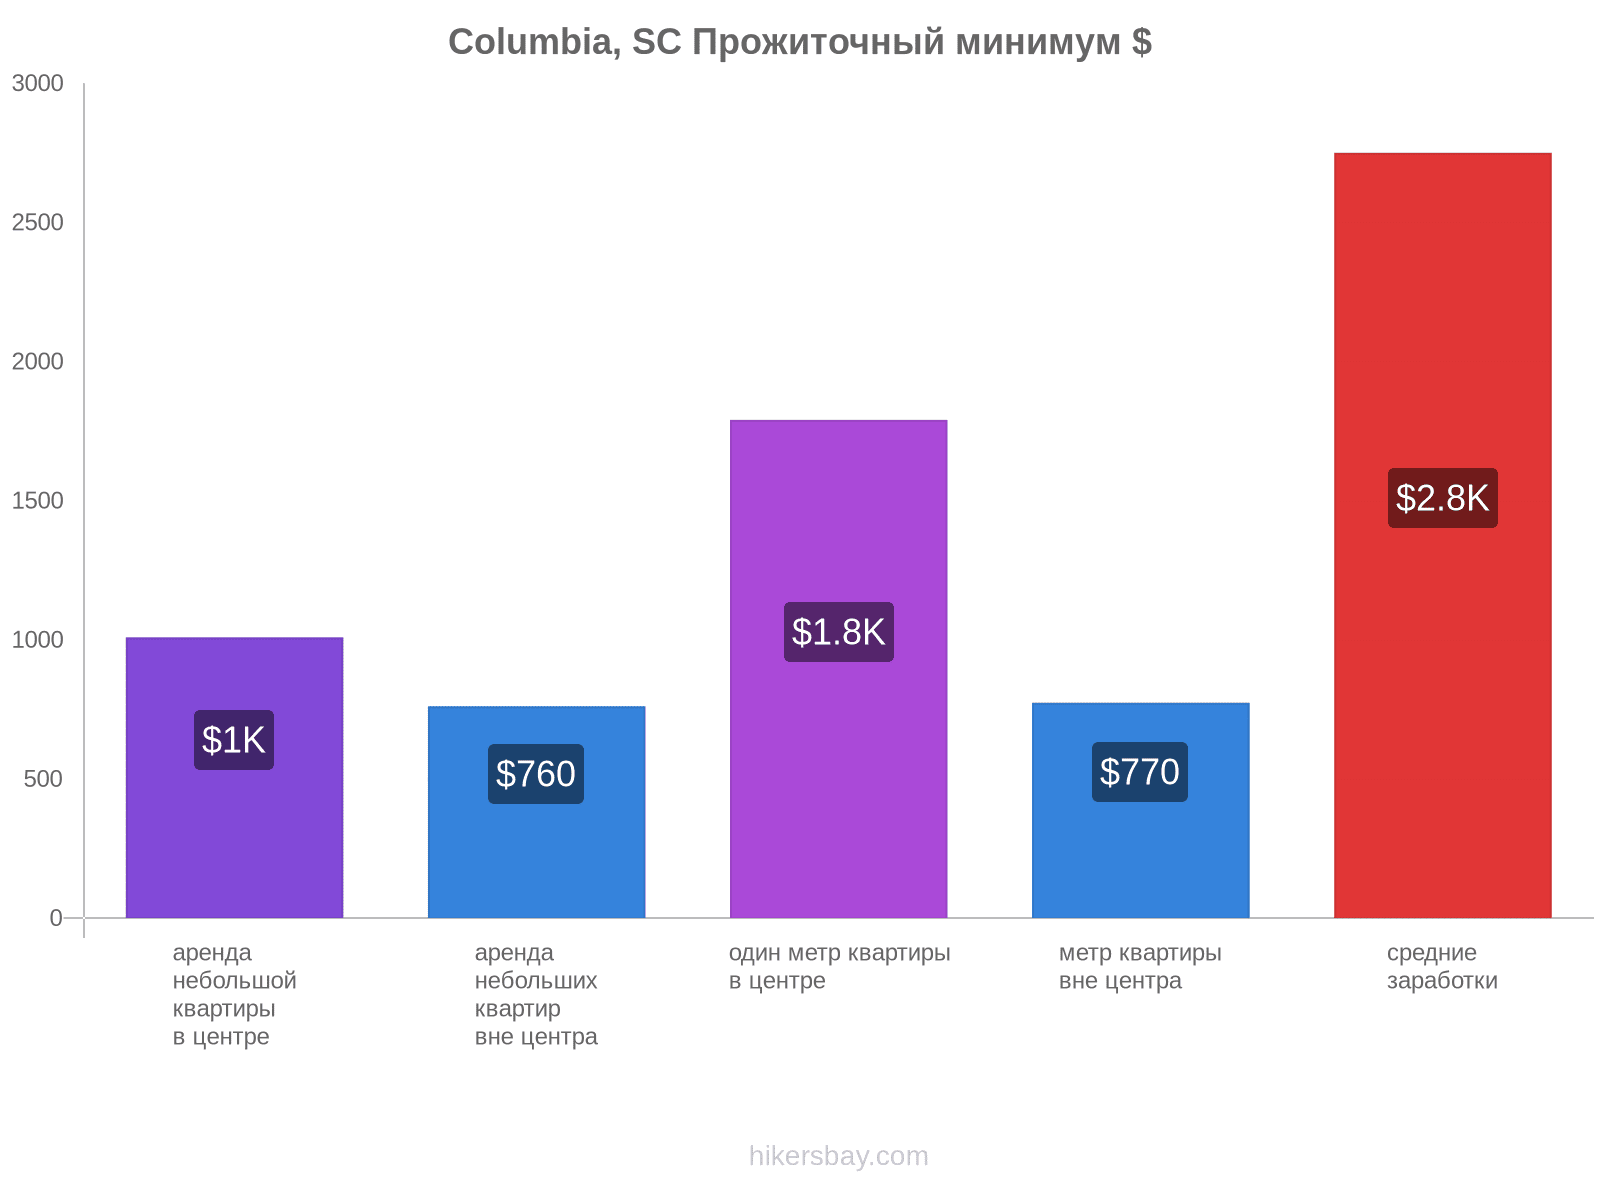 Columbia, SC стоимость жизни hikersbay.com